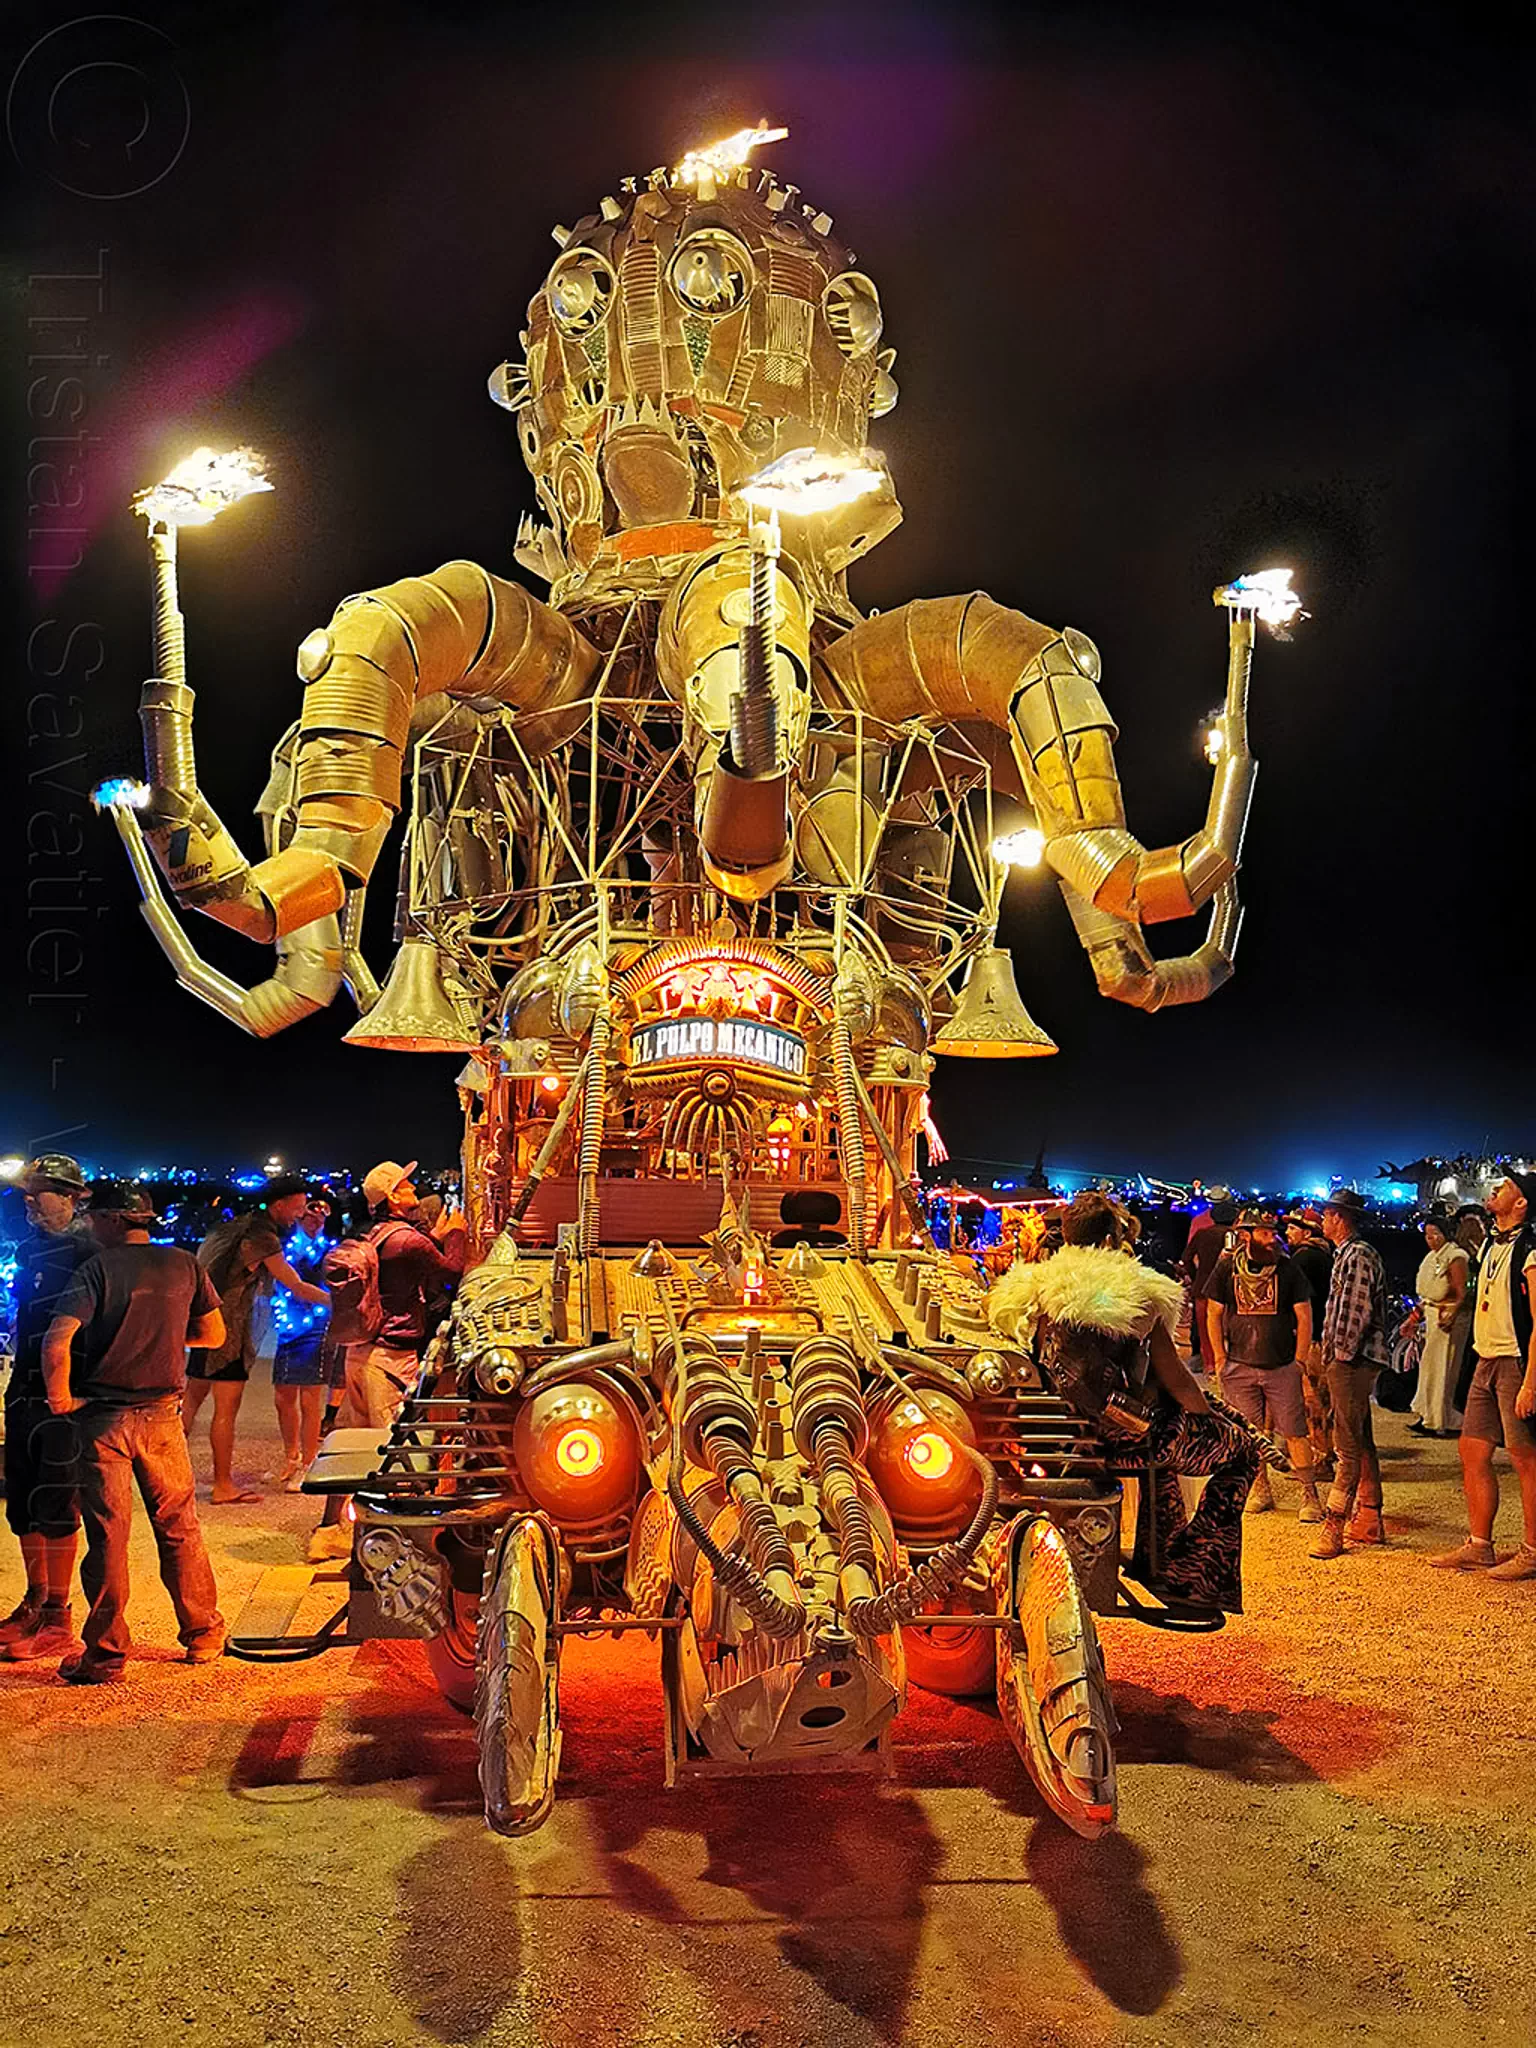 el pulpo mecanico - burning man 2019, art car, burning man, mutant vehicles, night